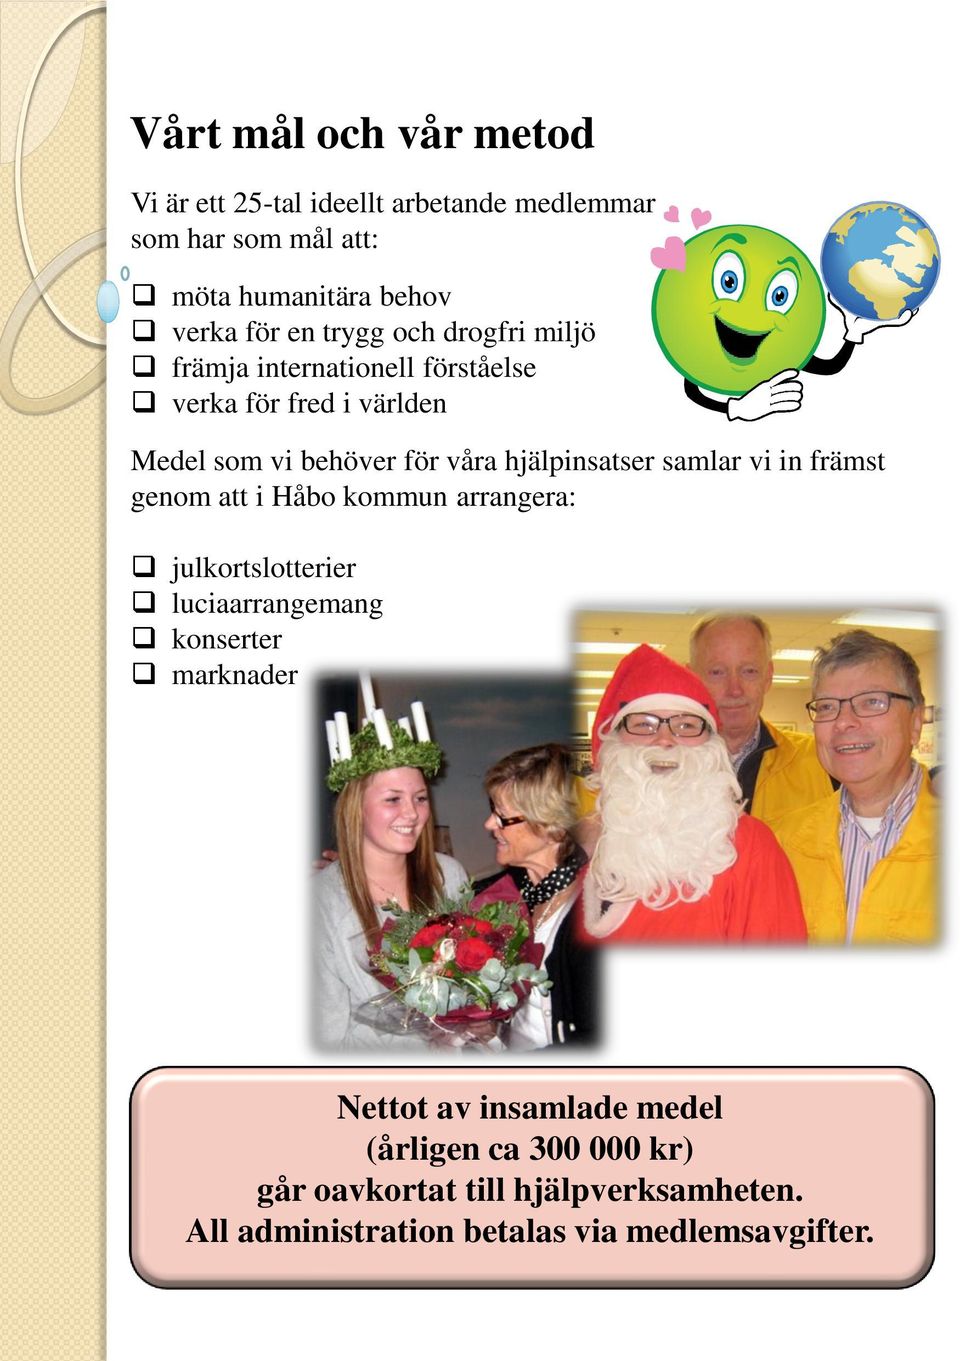 hjälpinsatser samlar vi in främst genom att i Håbo kommun arrangera: julkortslotterier luciaarrangemang konserter marknader